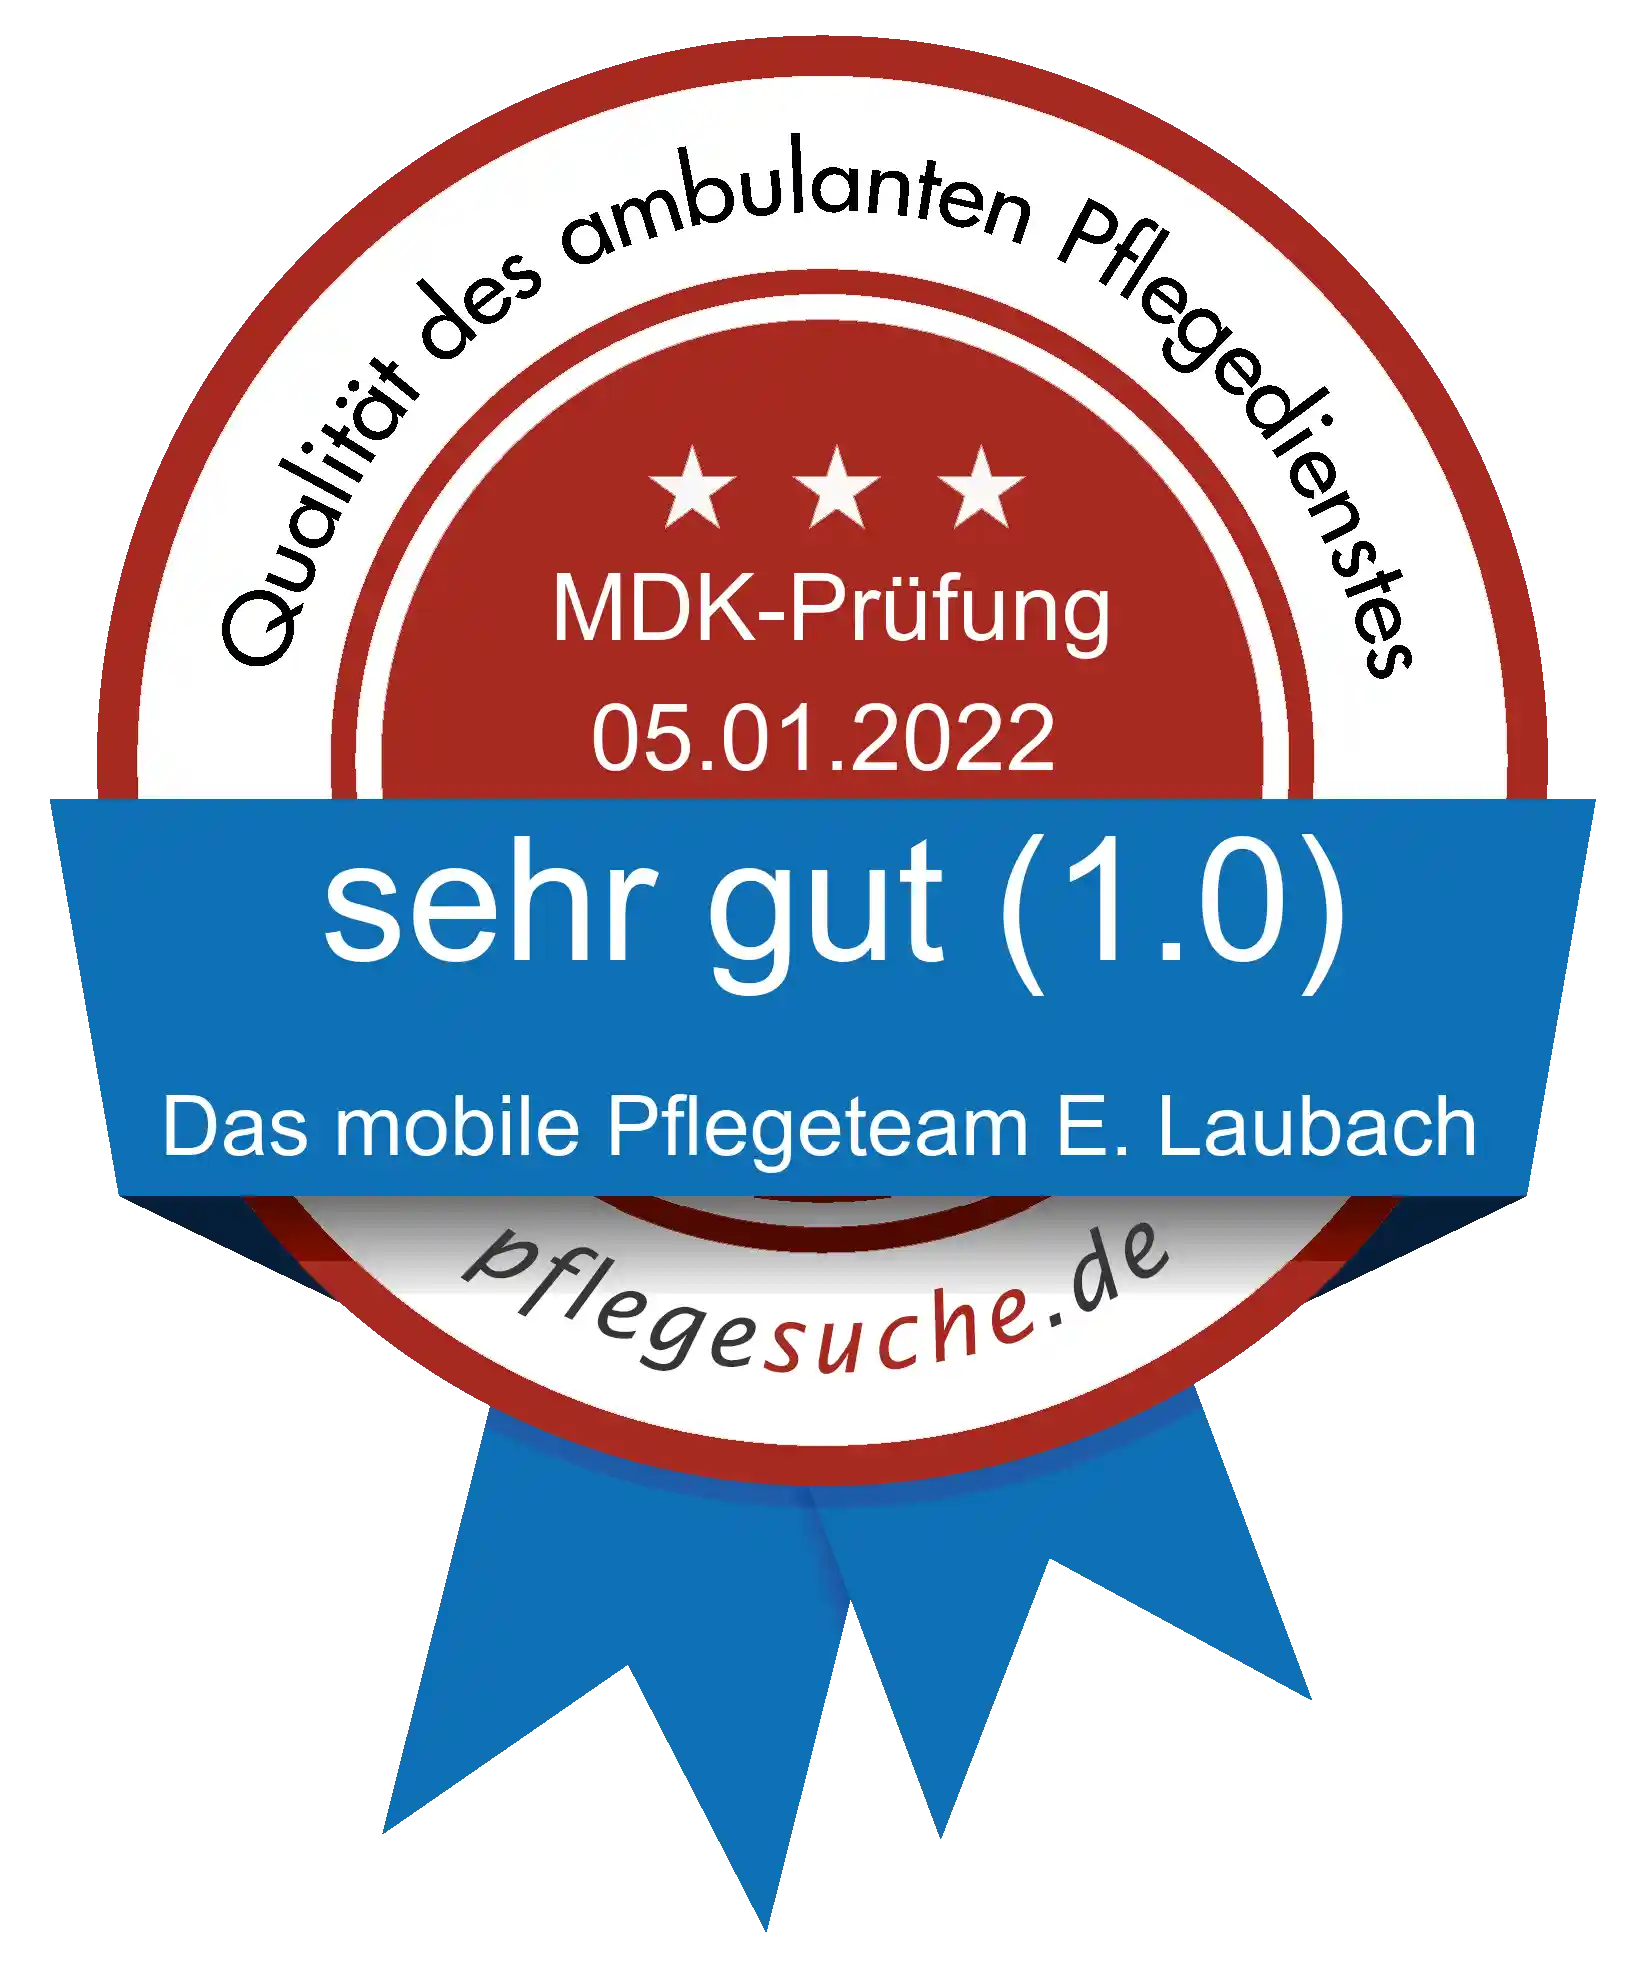 Siegel Benotung: Das mobile Pflegeteam E. Laubach